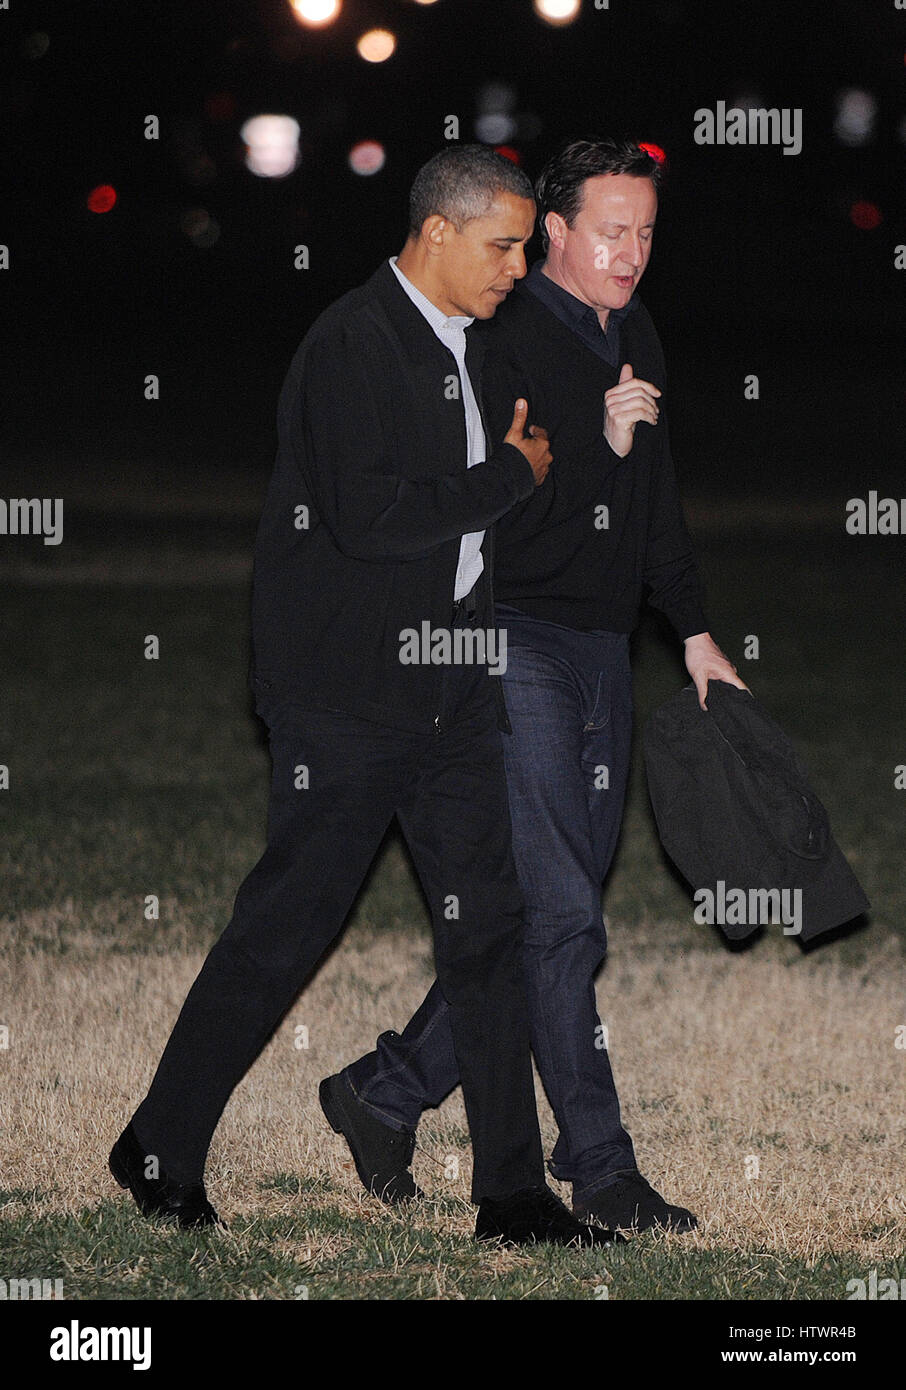 Le président des États-Unis Barack Obama et le premier ministre David Cameron de Grande-bretagne retour à la Maison Blanche le 13 mars 2012 à Washington D.C., le Président et le premier ministre a assisté à un premier tour de jeu au cours de la NCAA Division I Men's Basketball Banque D'Images